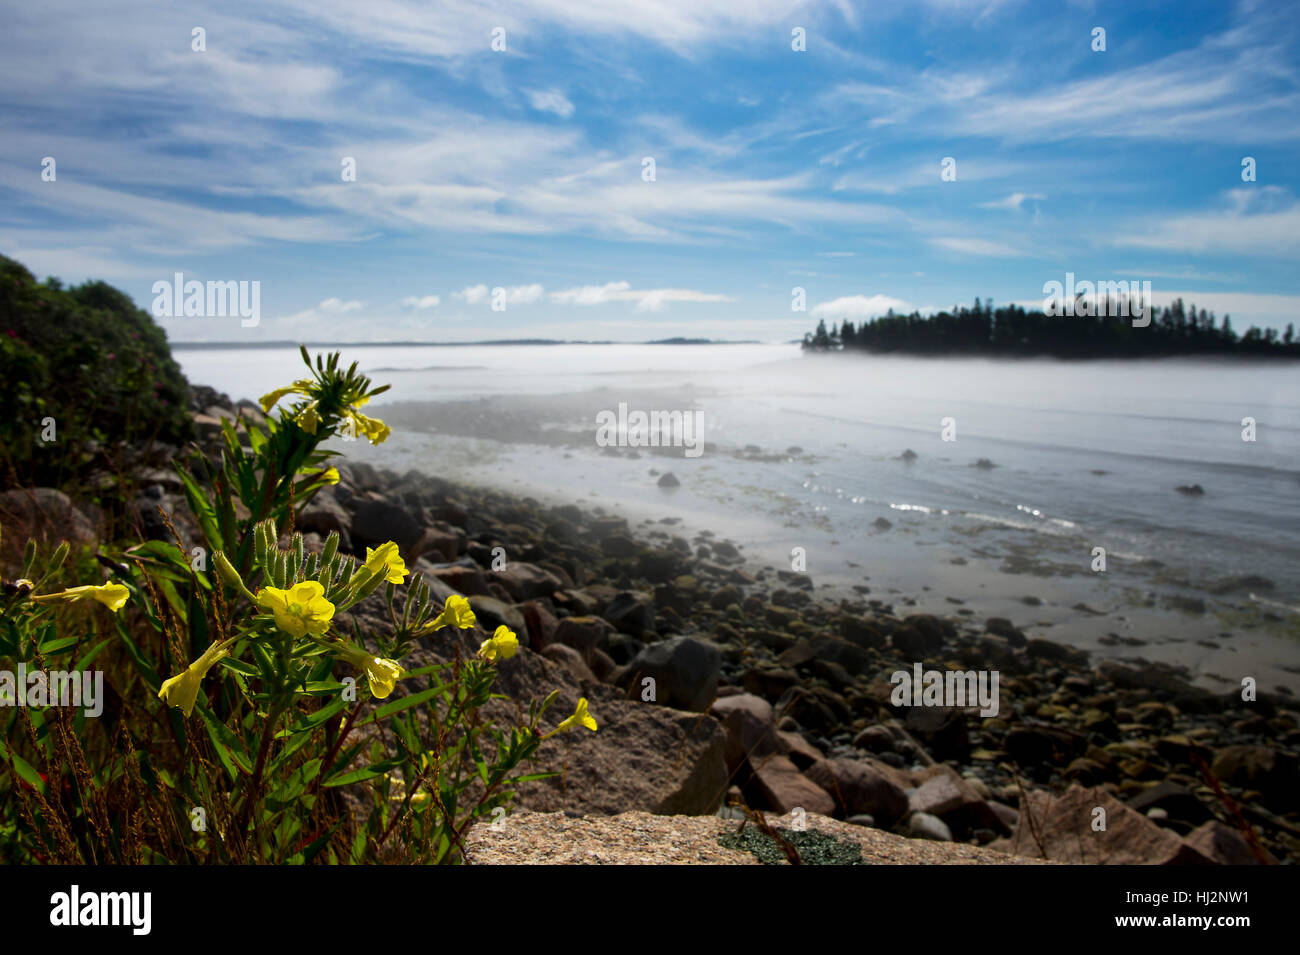 Un petit groupe de fleurs sauvages jaunes le long d'une côte rocheuse comme un brouillard bas pèse sur l'eau. Banque D'Images